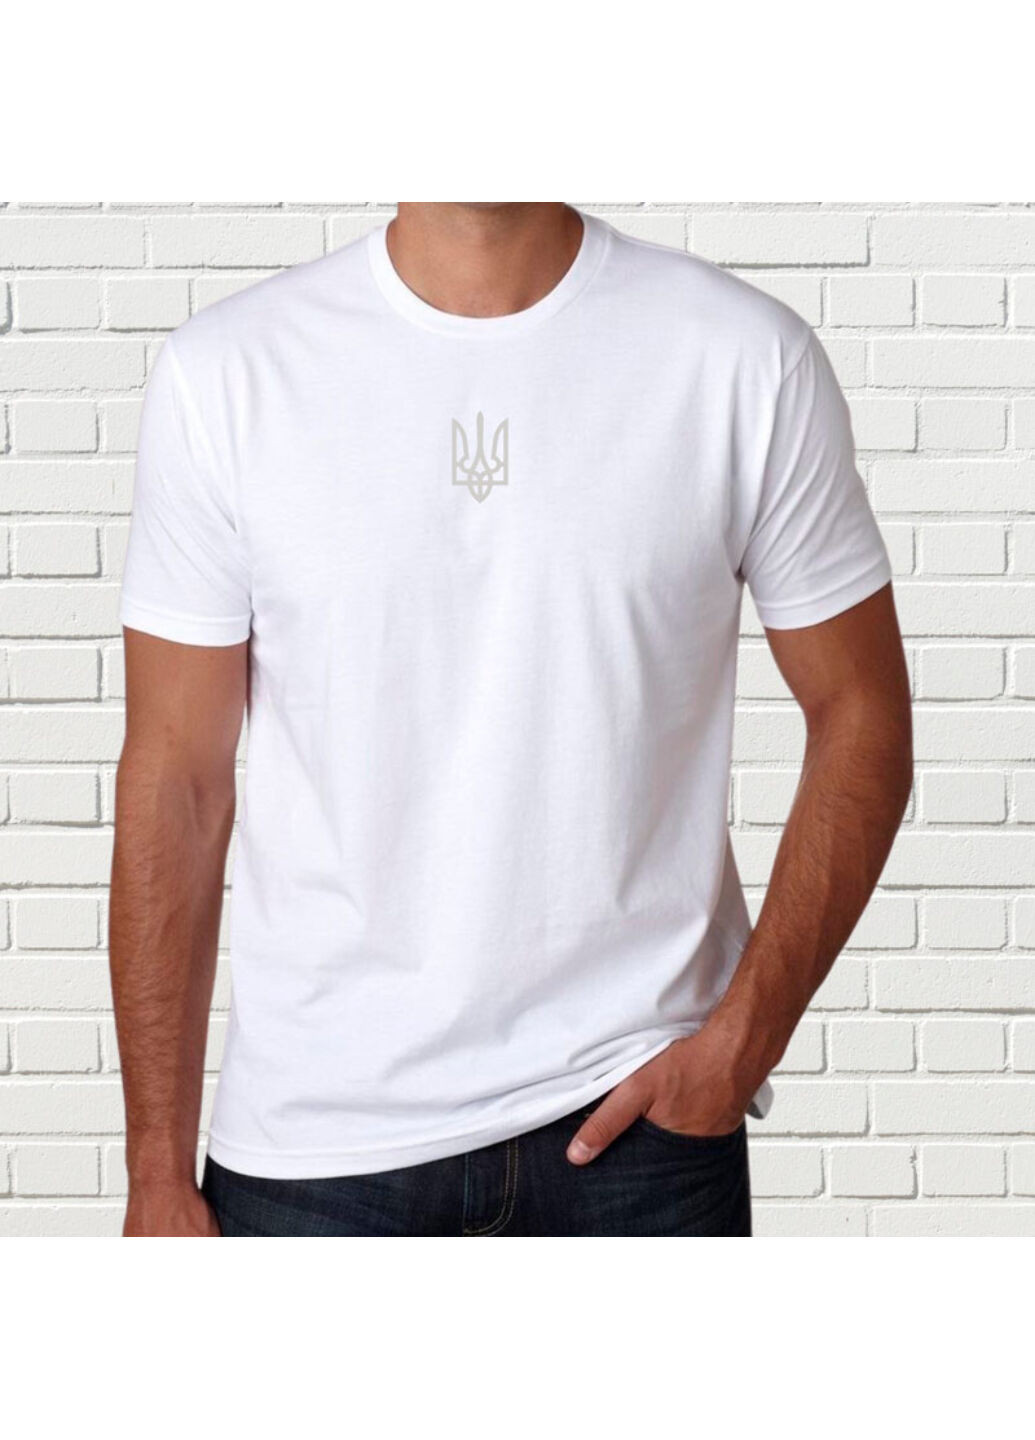 Белая футболка с вышивкой белого трезубца мужская белый m No Brand